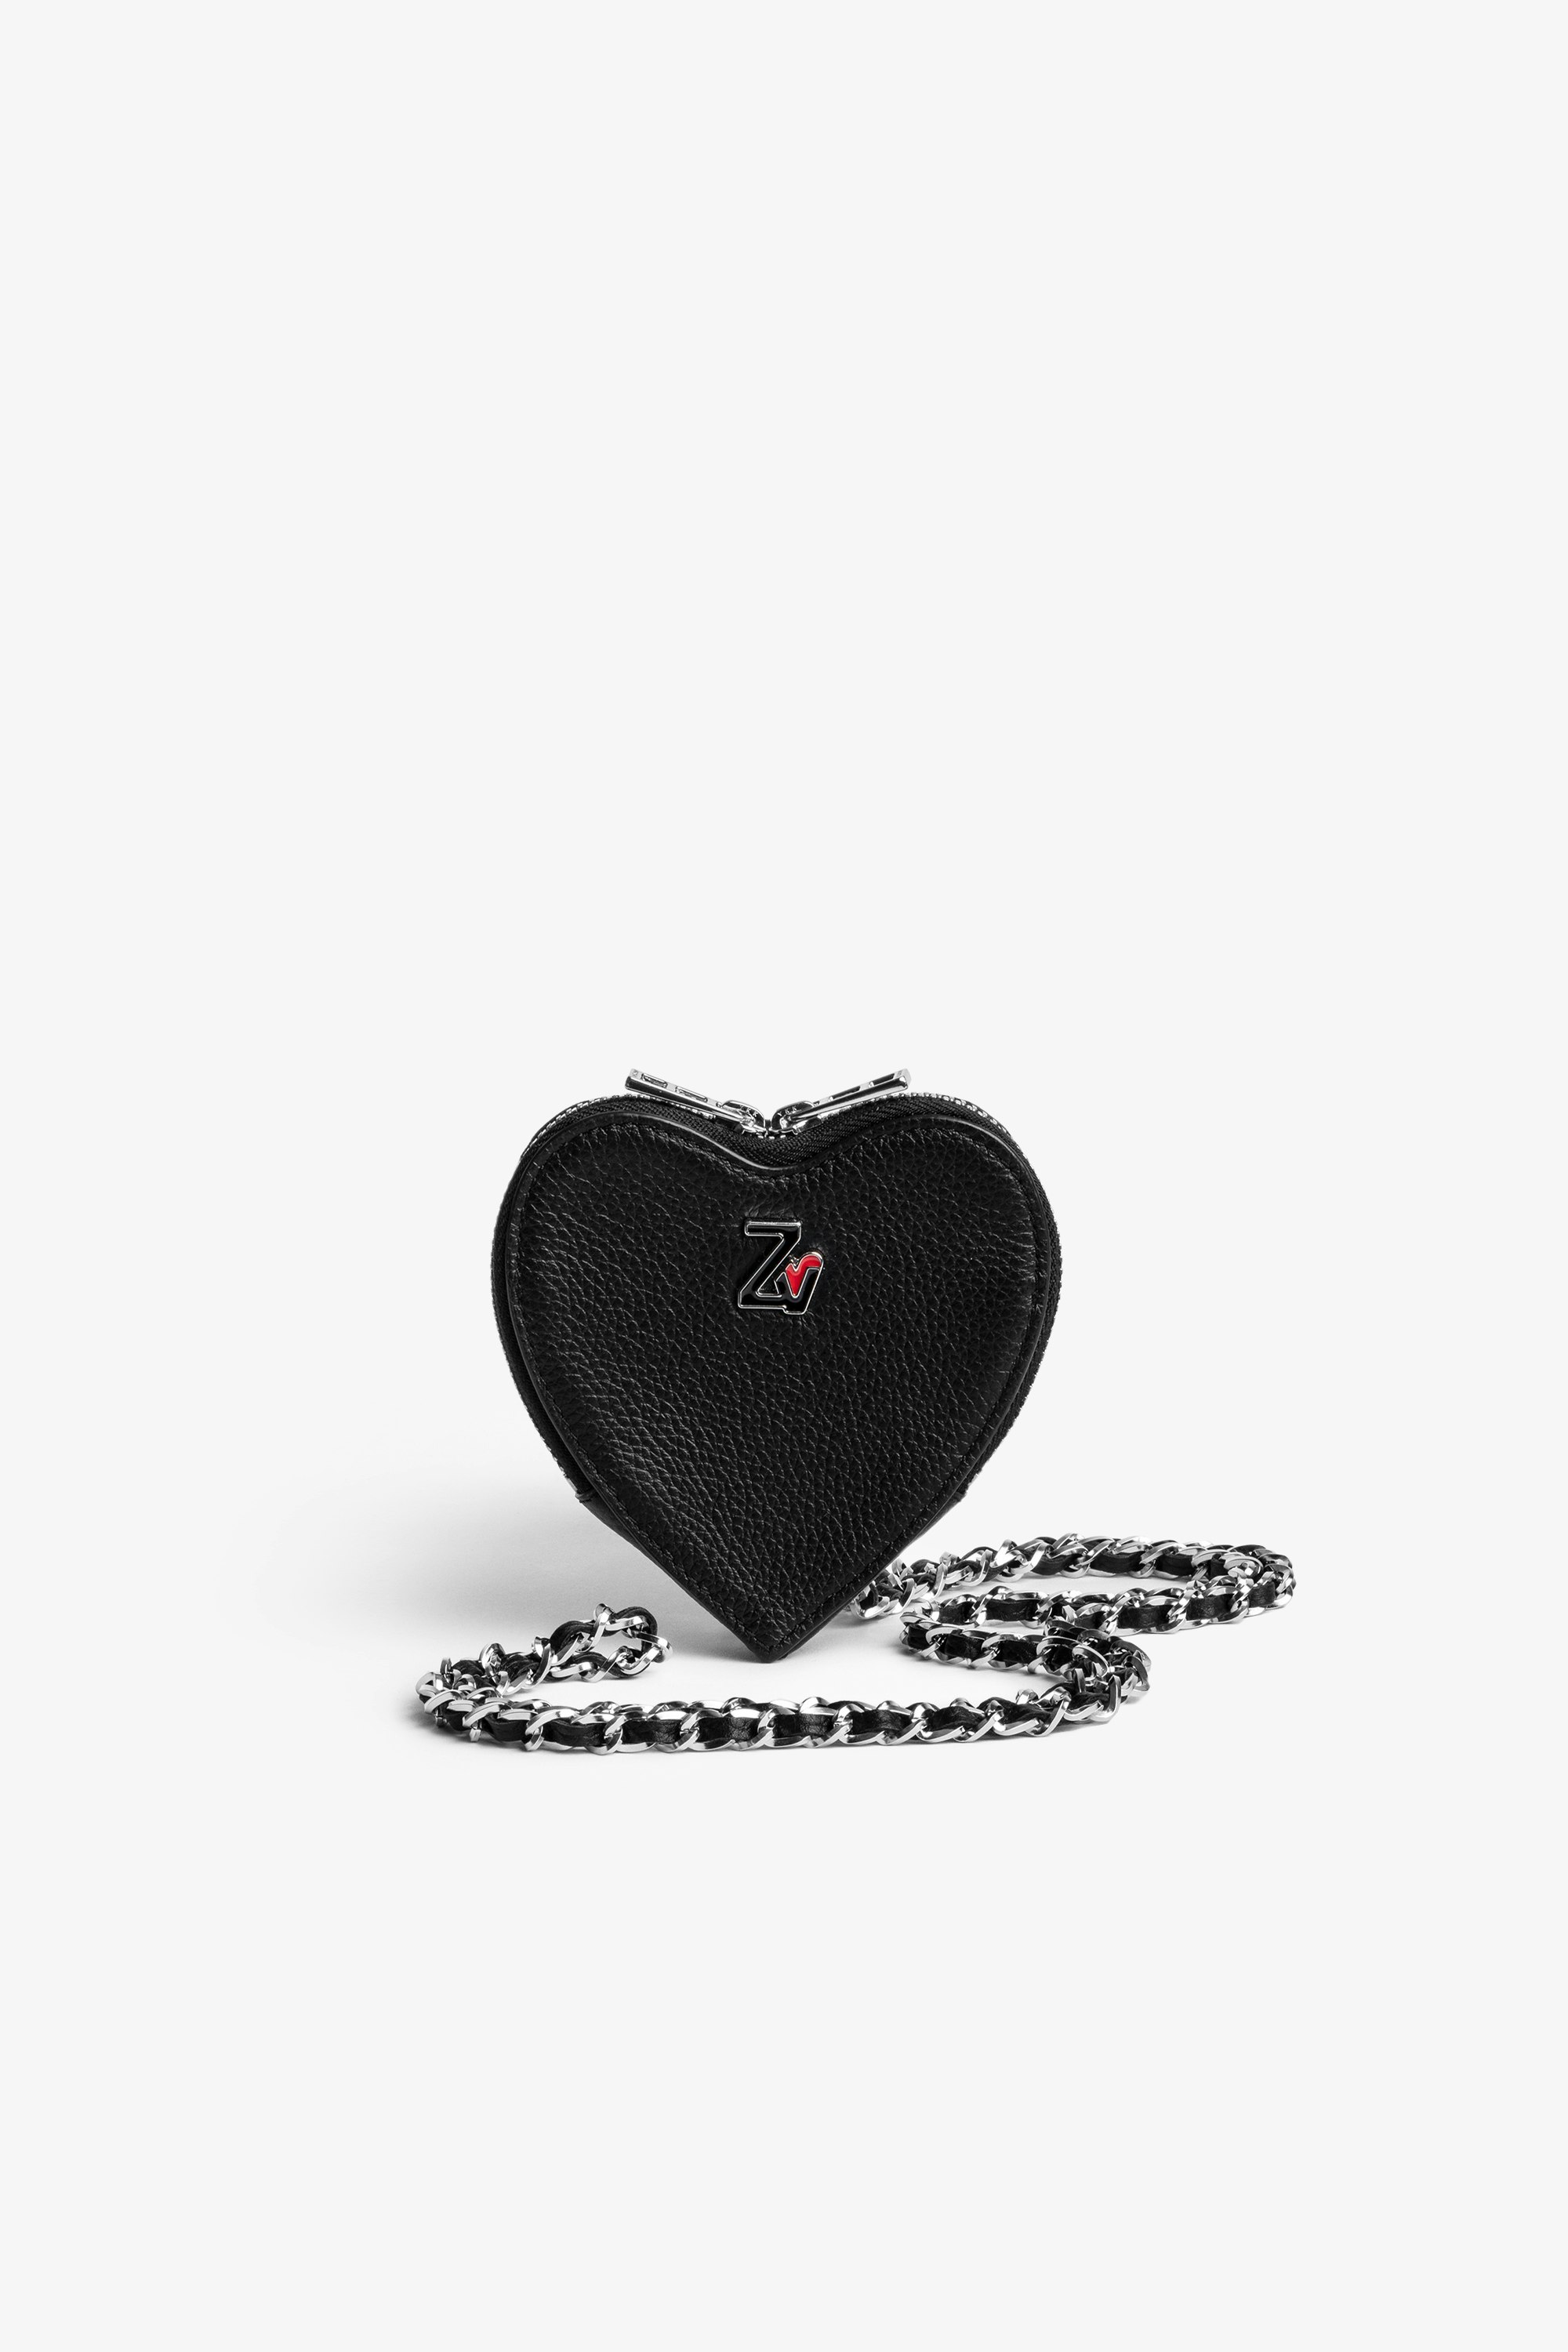 Clutch ZV Crush Le Coeur Herz-Clutch aus schwarzem gekörnten Leder mit Reißverschluss und Umhängeriemen aus Kette und Leder für Damen